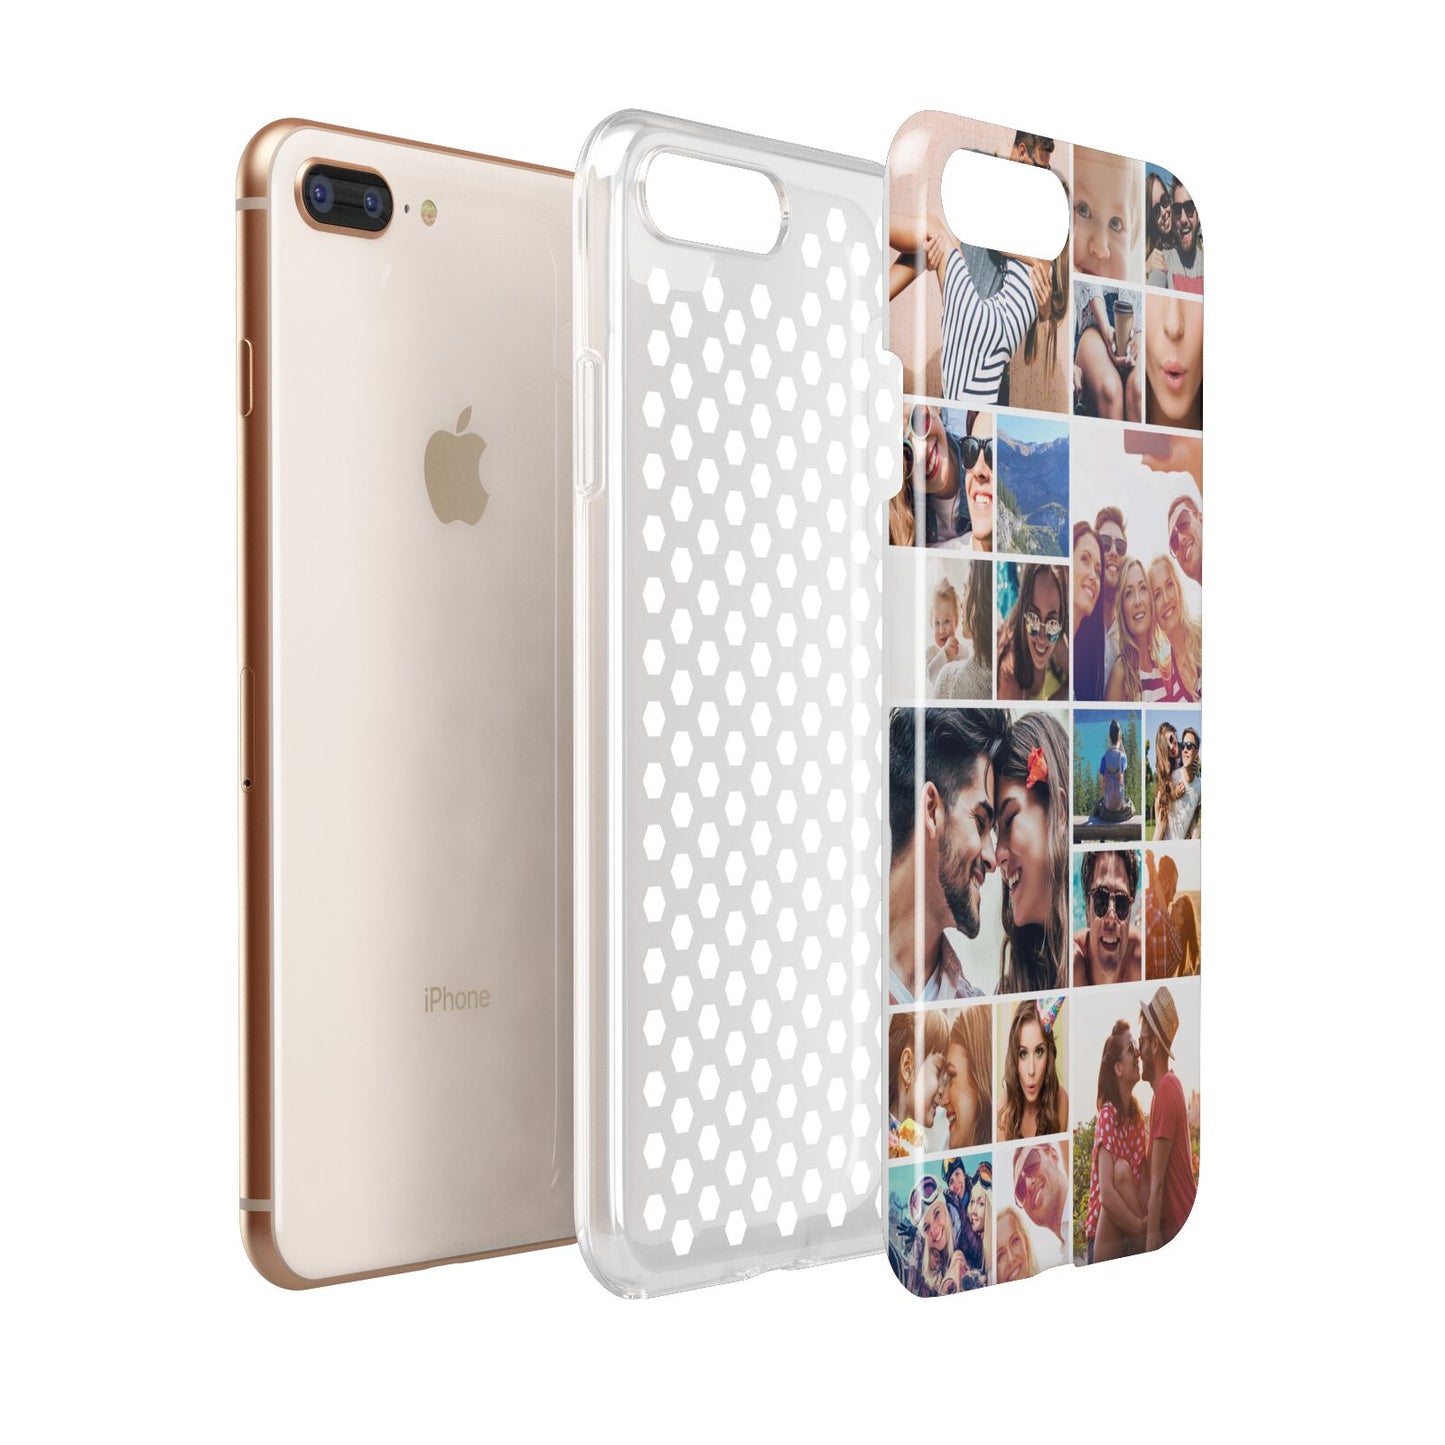 Photo Grid Apple iPhone 7 8 Plus 3D Tough Case Expanded View